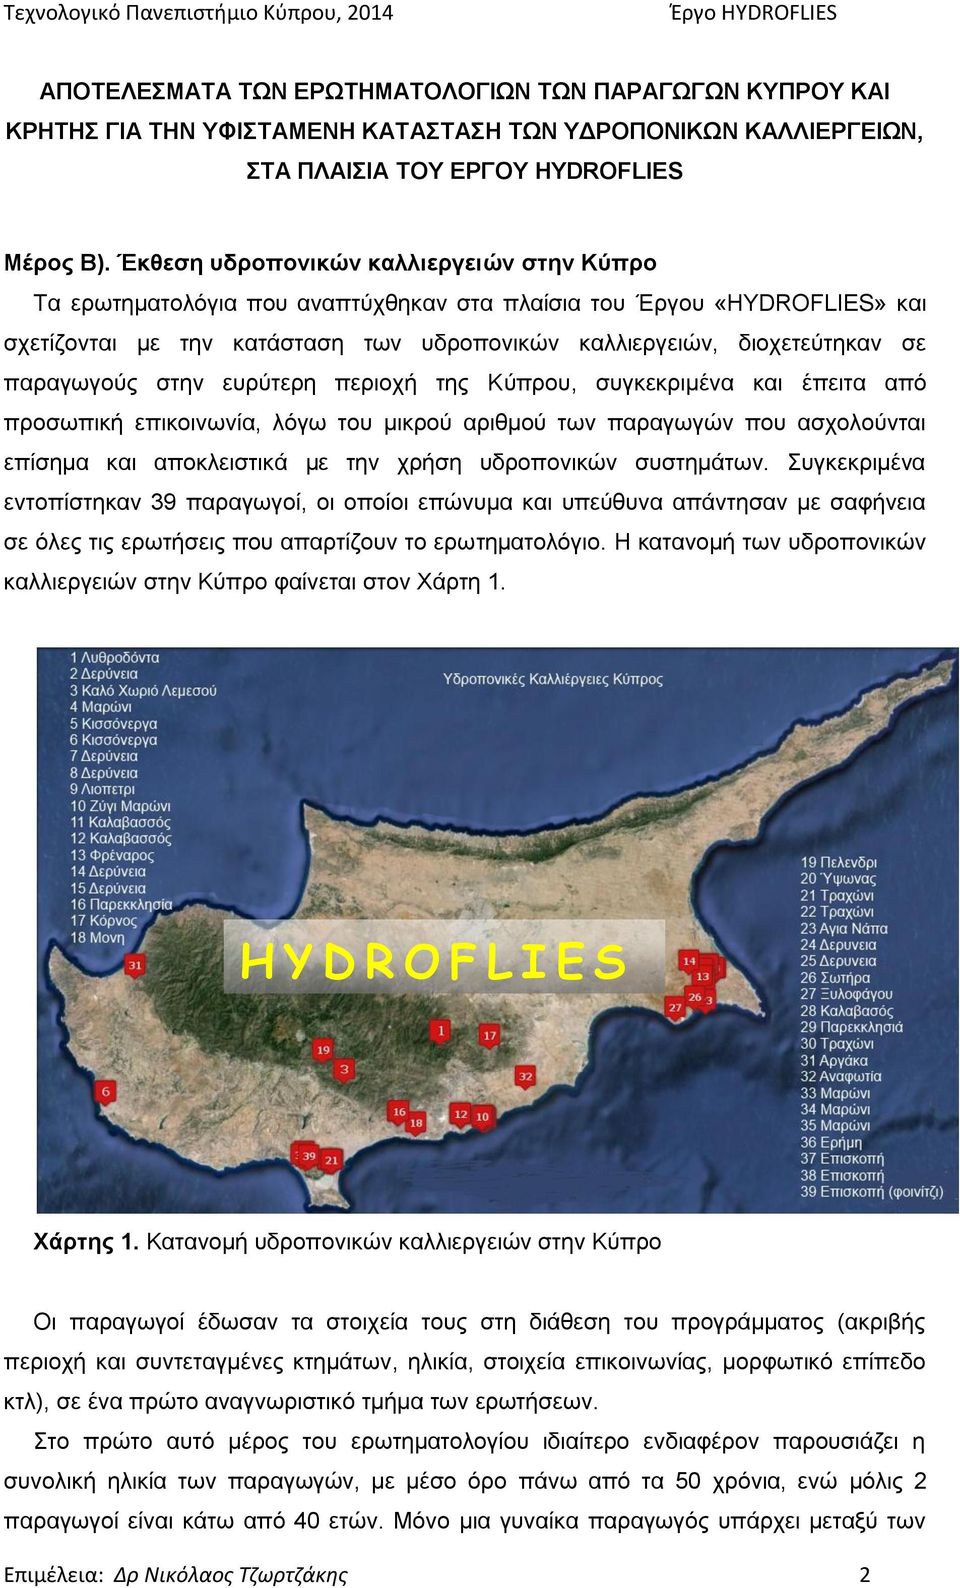 παραγωγούς στην ευρύτερη περιοχή της Κύπρου, συγκεκριμένα και έπειτα από προσωπική επικοινωνία, λόγω του μικρού αριθμού των παραγωγών που ασχολούνται επίσημα και αποκλειστικά με την χρήση υδροπονικών